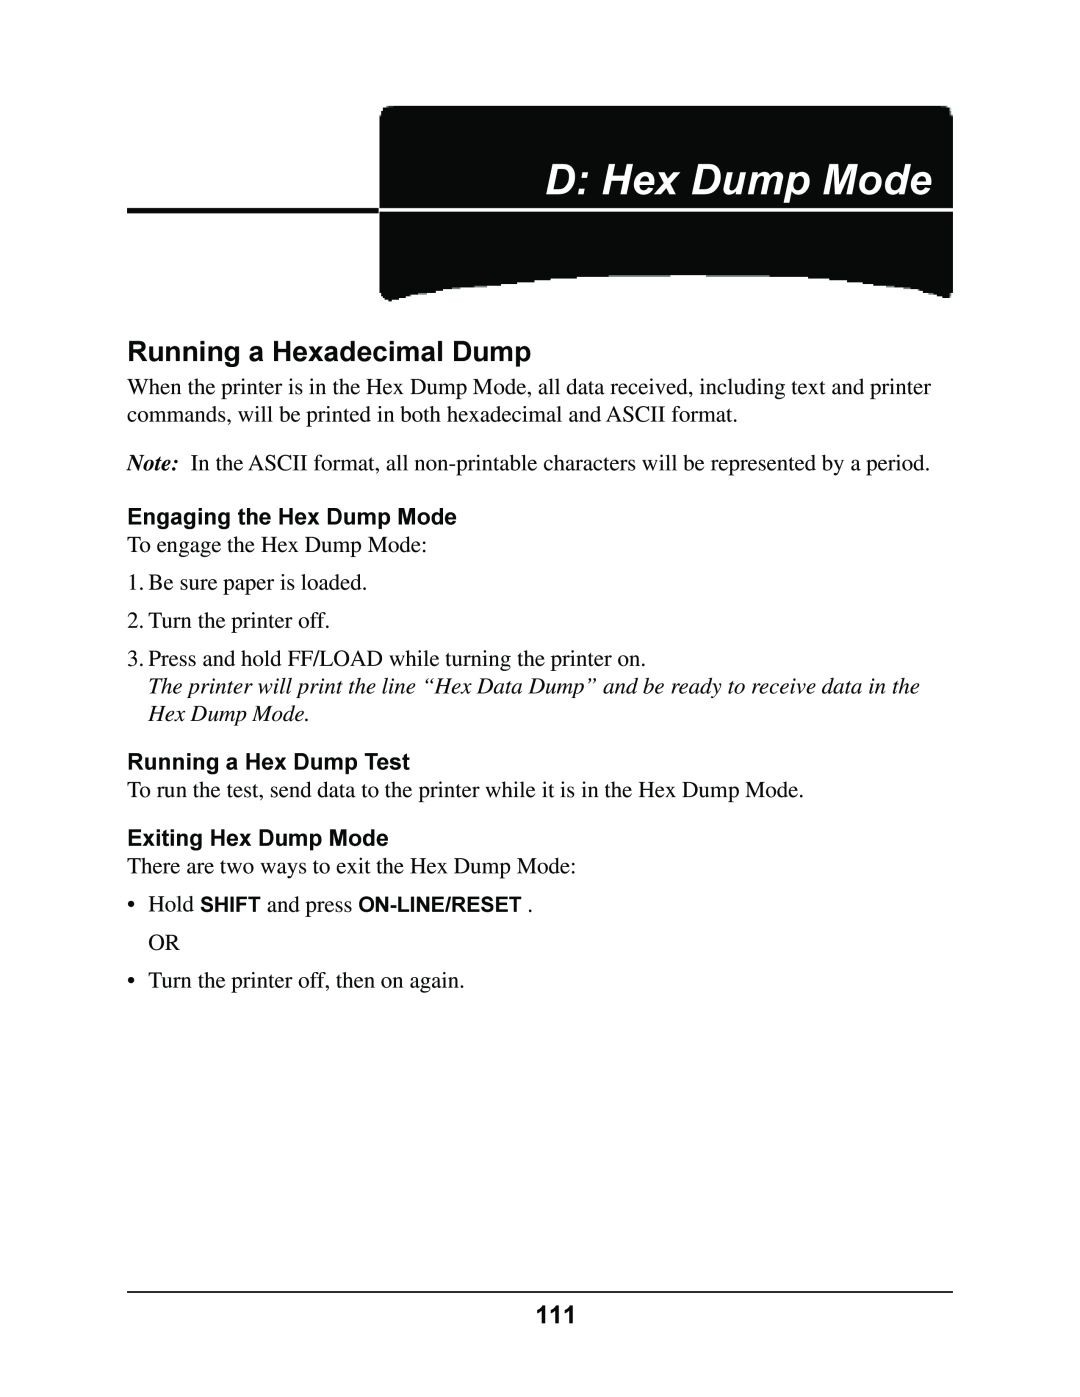 Oki 4410 manual D Hex Dump Mode, Running a Hexadecimal Dump, Engaging the Hex Dump Mode, Running a Hex Dump Test 